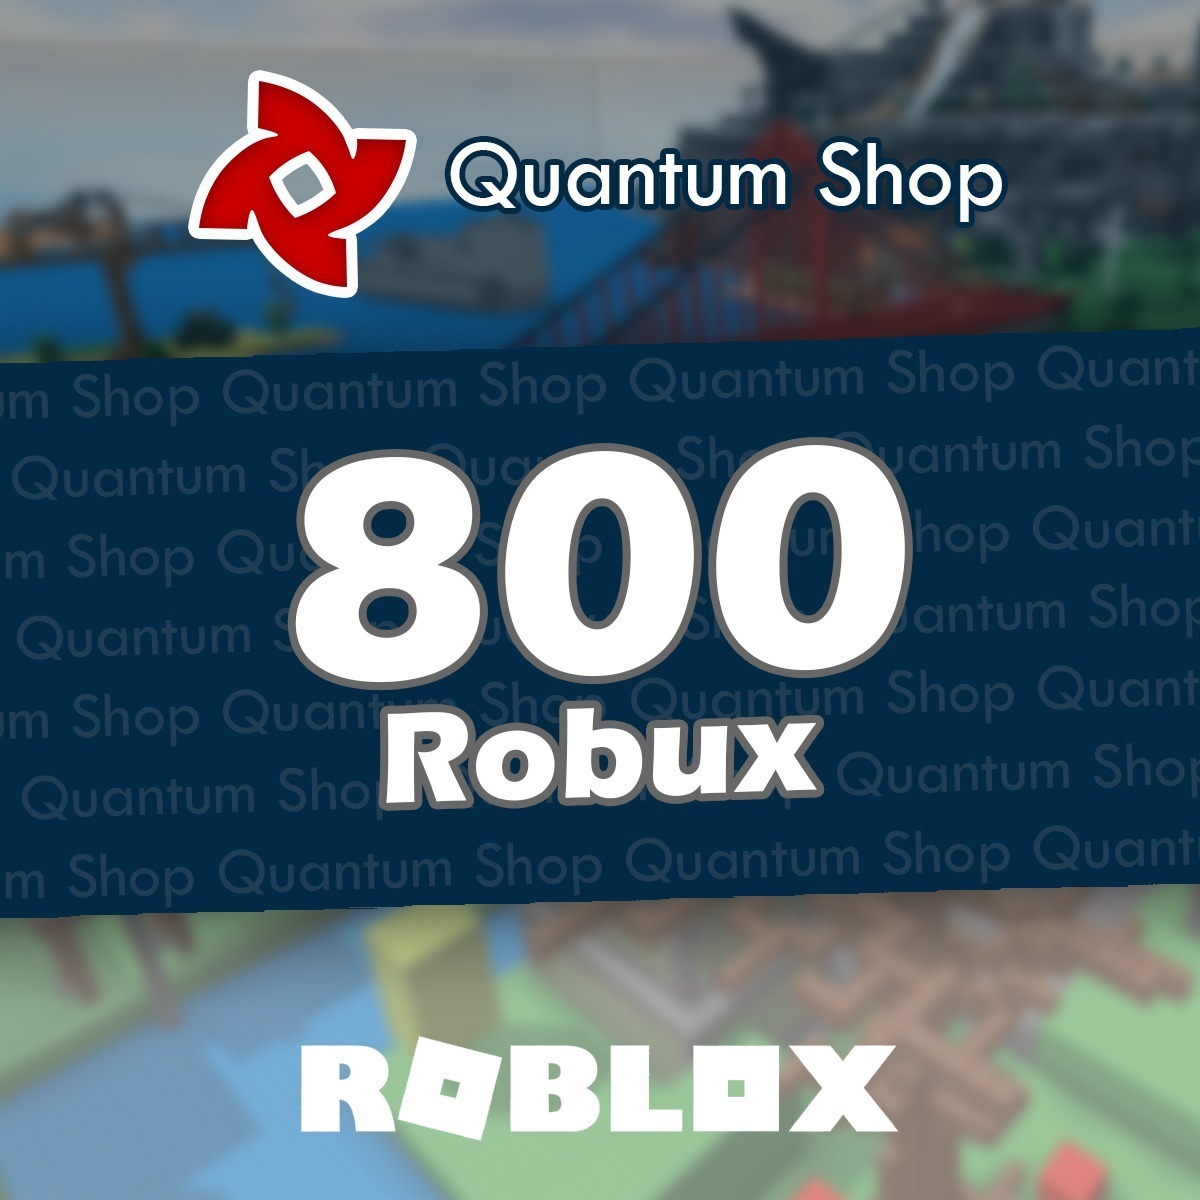 800 Robux Roblox Entrega Inmediata Mercadolider Gold - como conseguir robux gratis 2017 noviembre